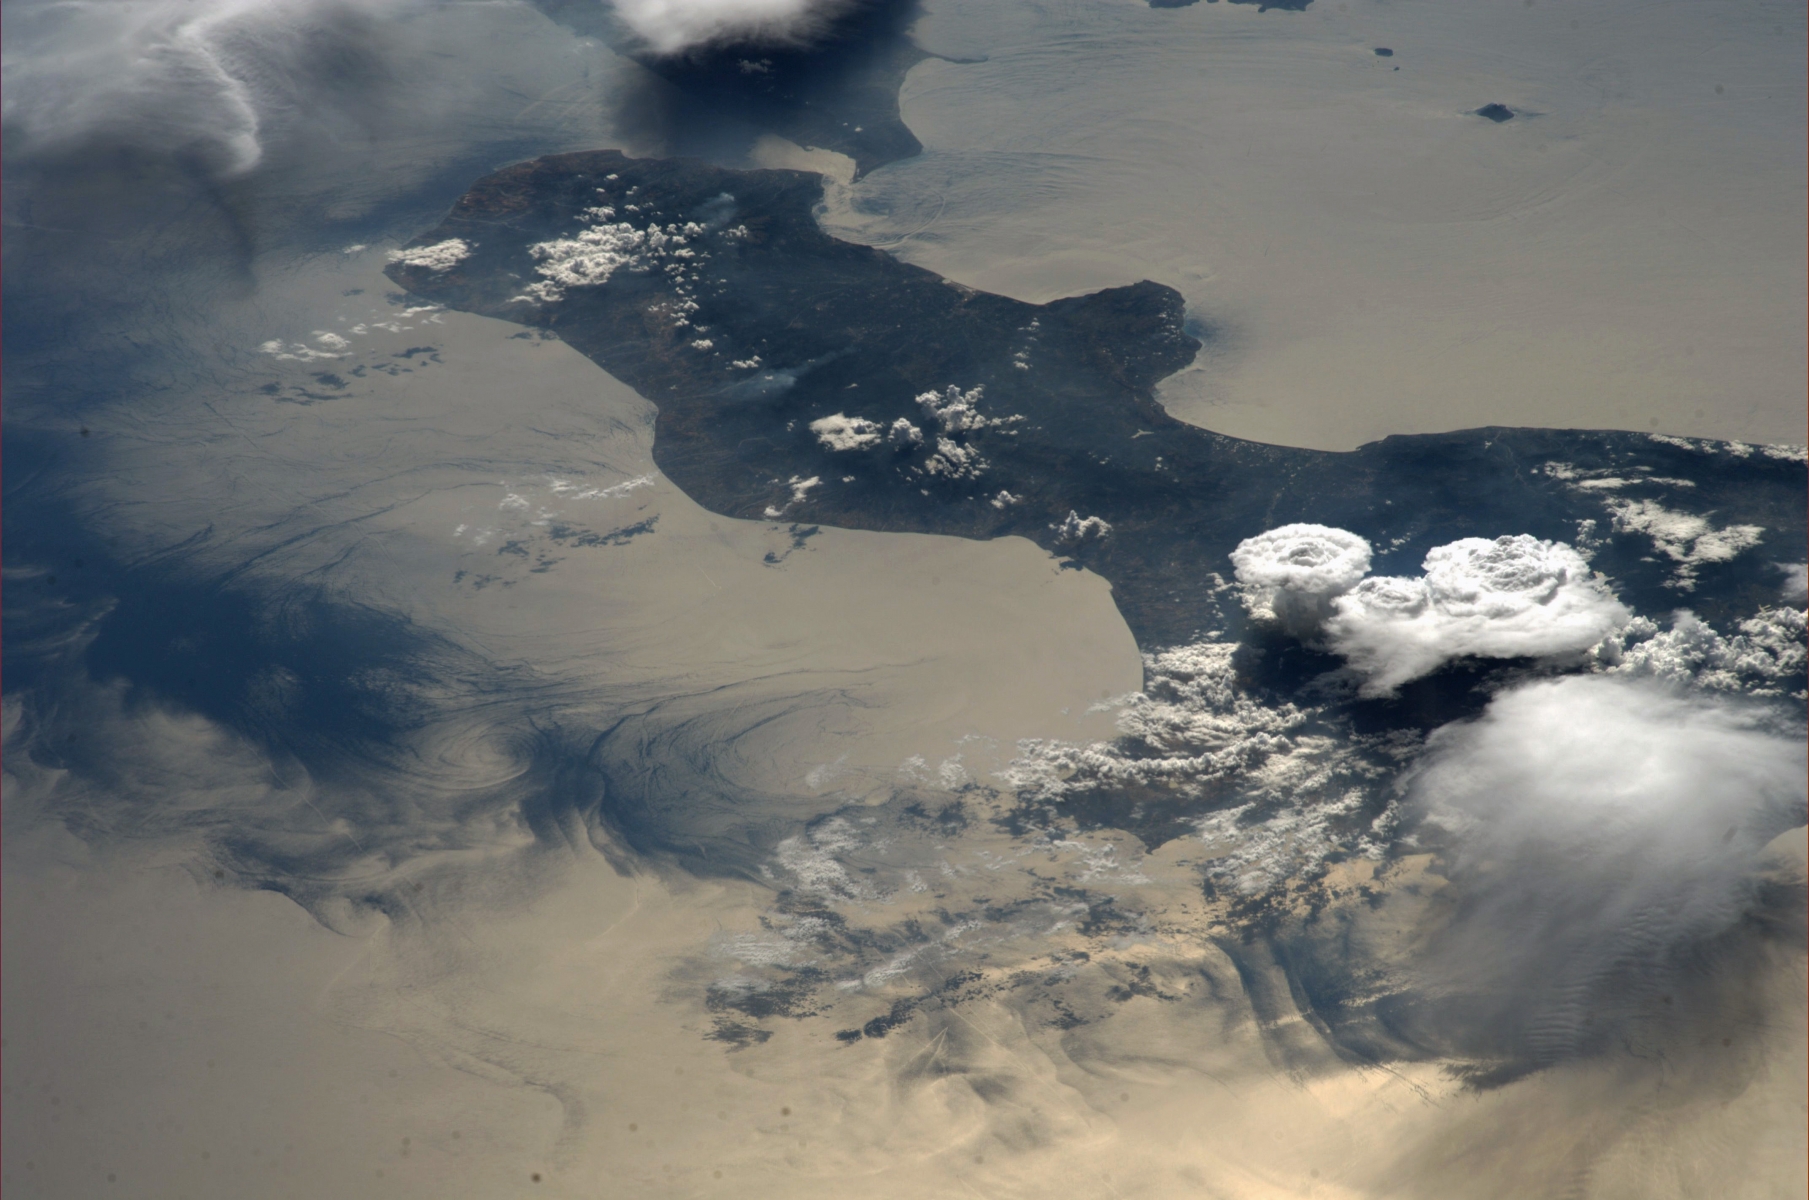 Tempête sur la Calabre, en Italie, vue depuis la Station spatiale internationale (ISS).